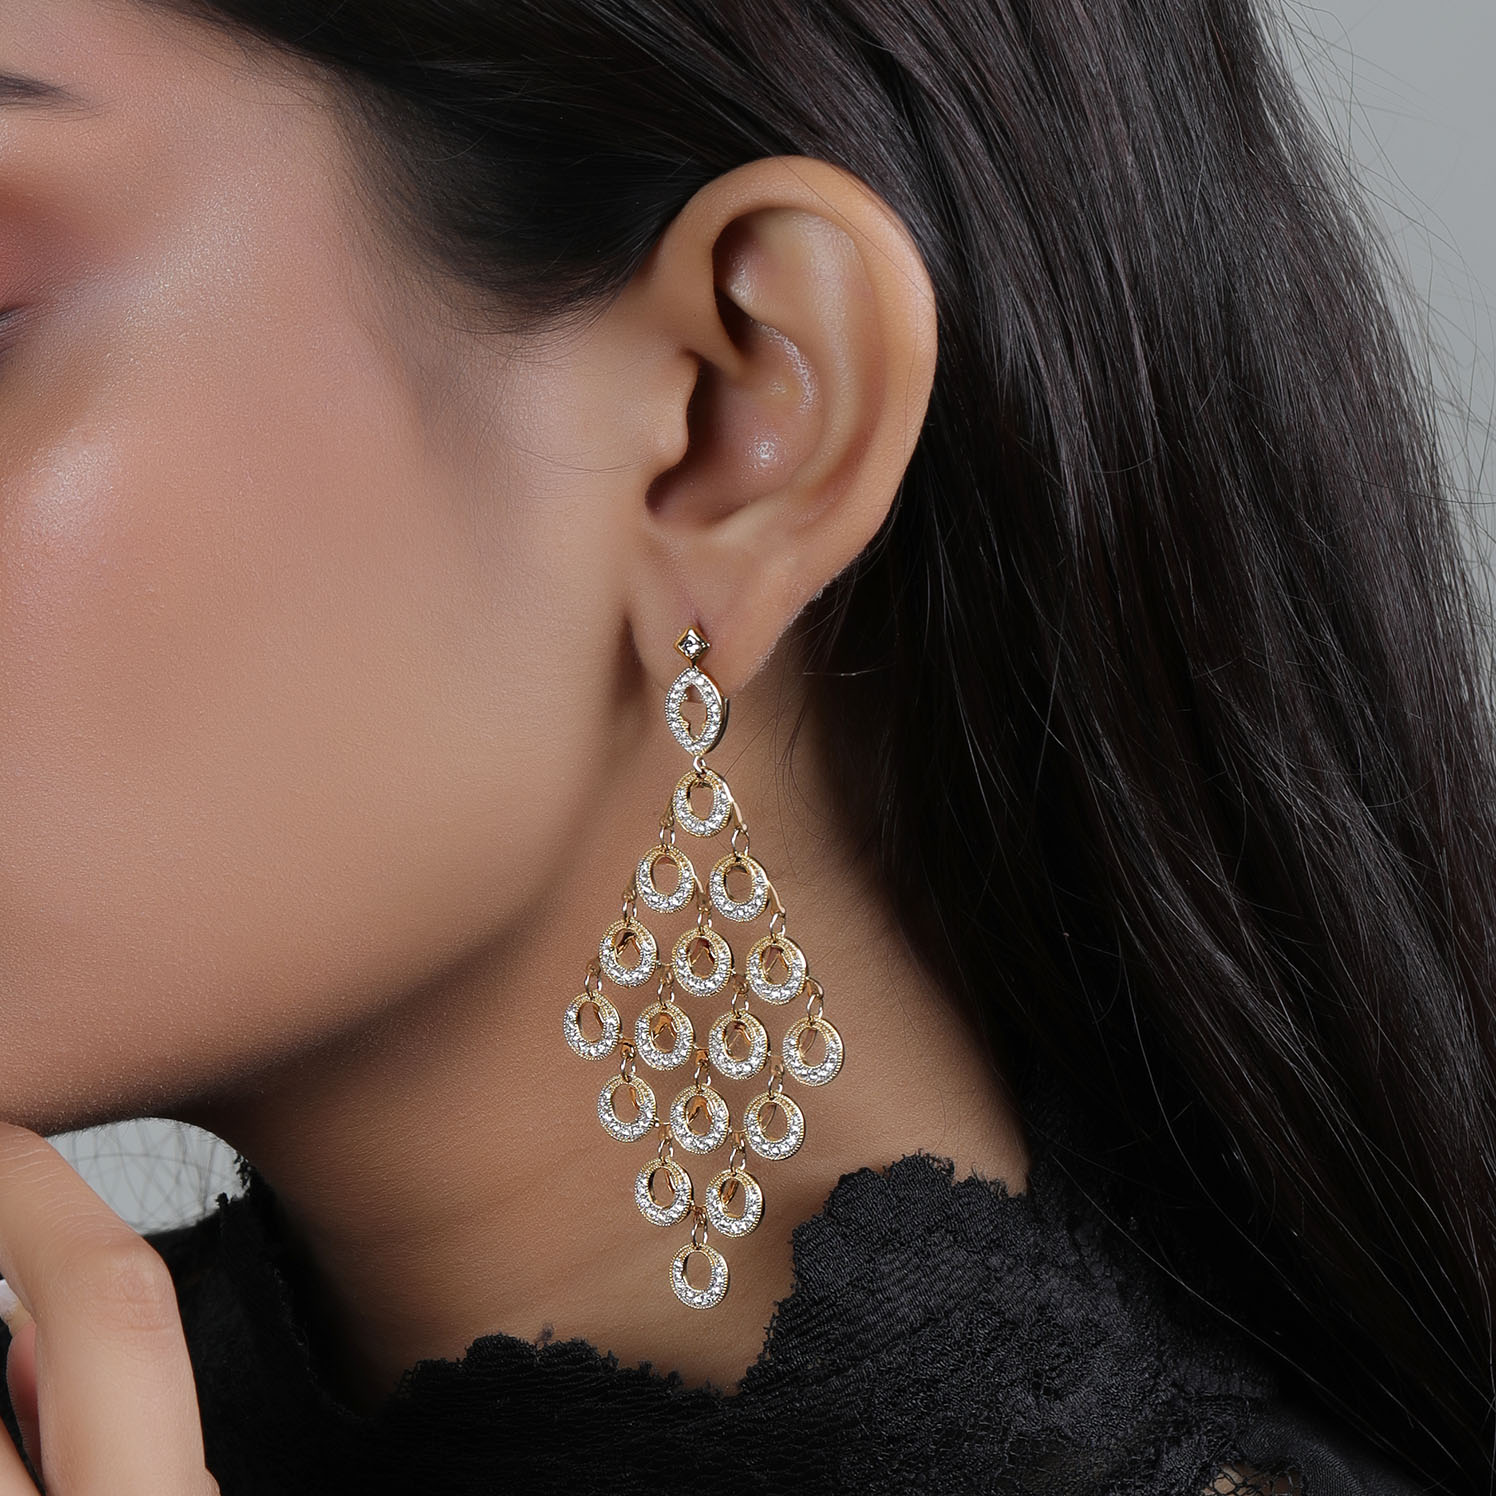 25 Best Long diamond earrings ideas  long diamond earrings earrings diamond  earrings